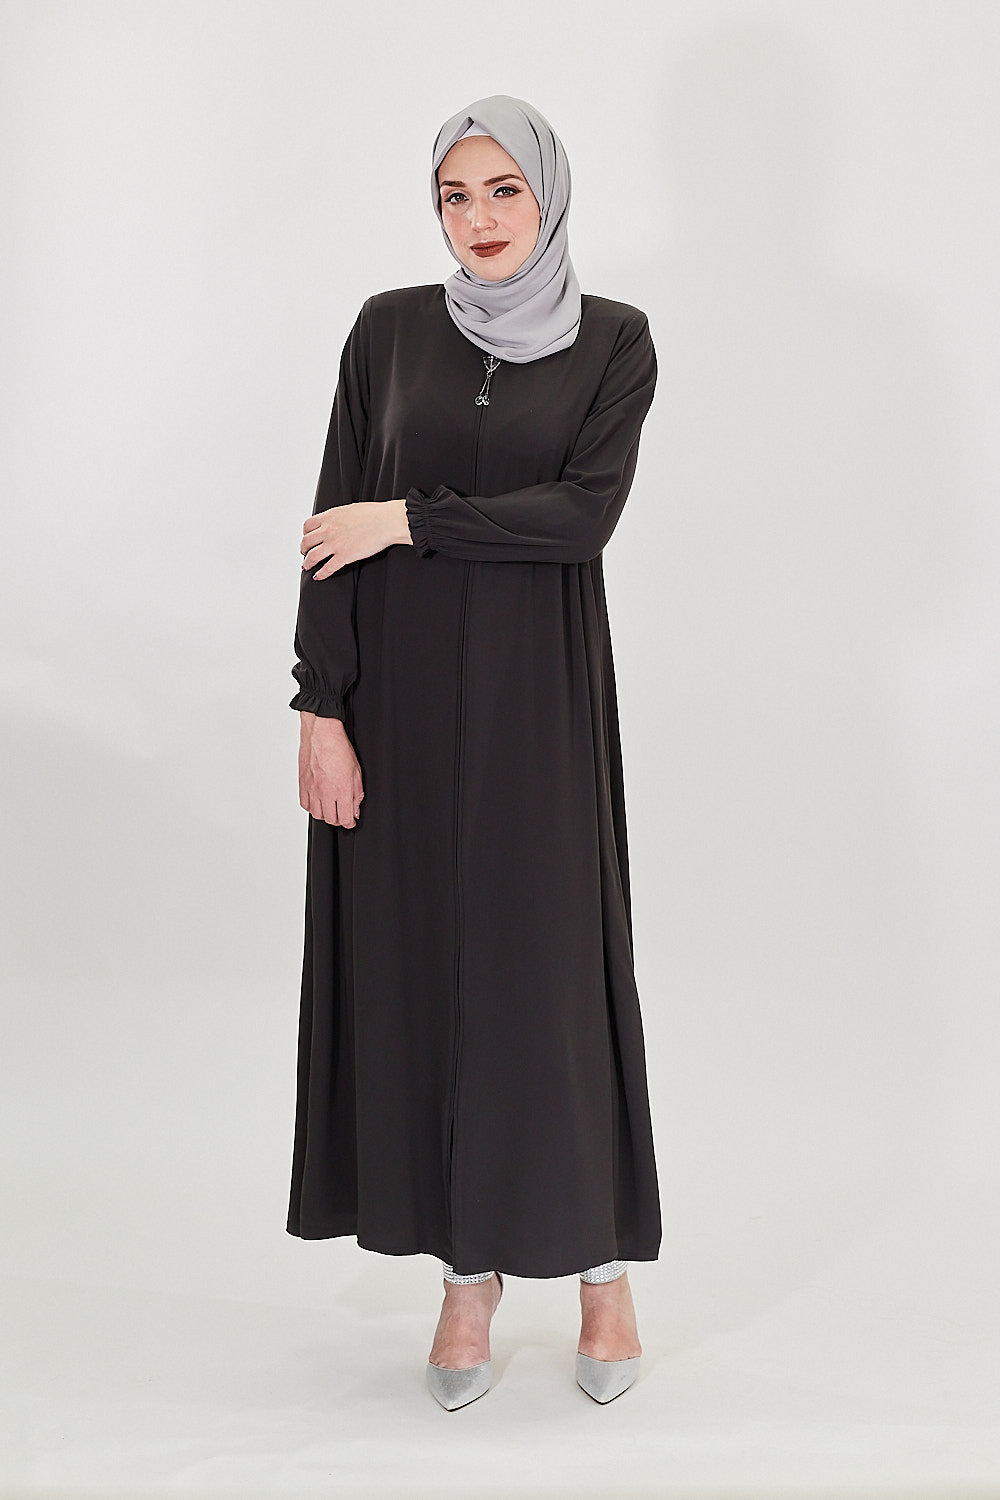 Muslim Clothing -  Canada